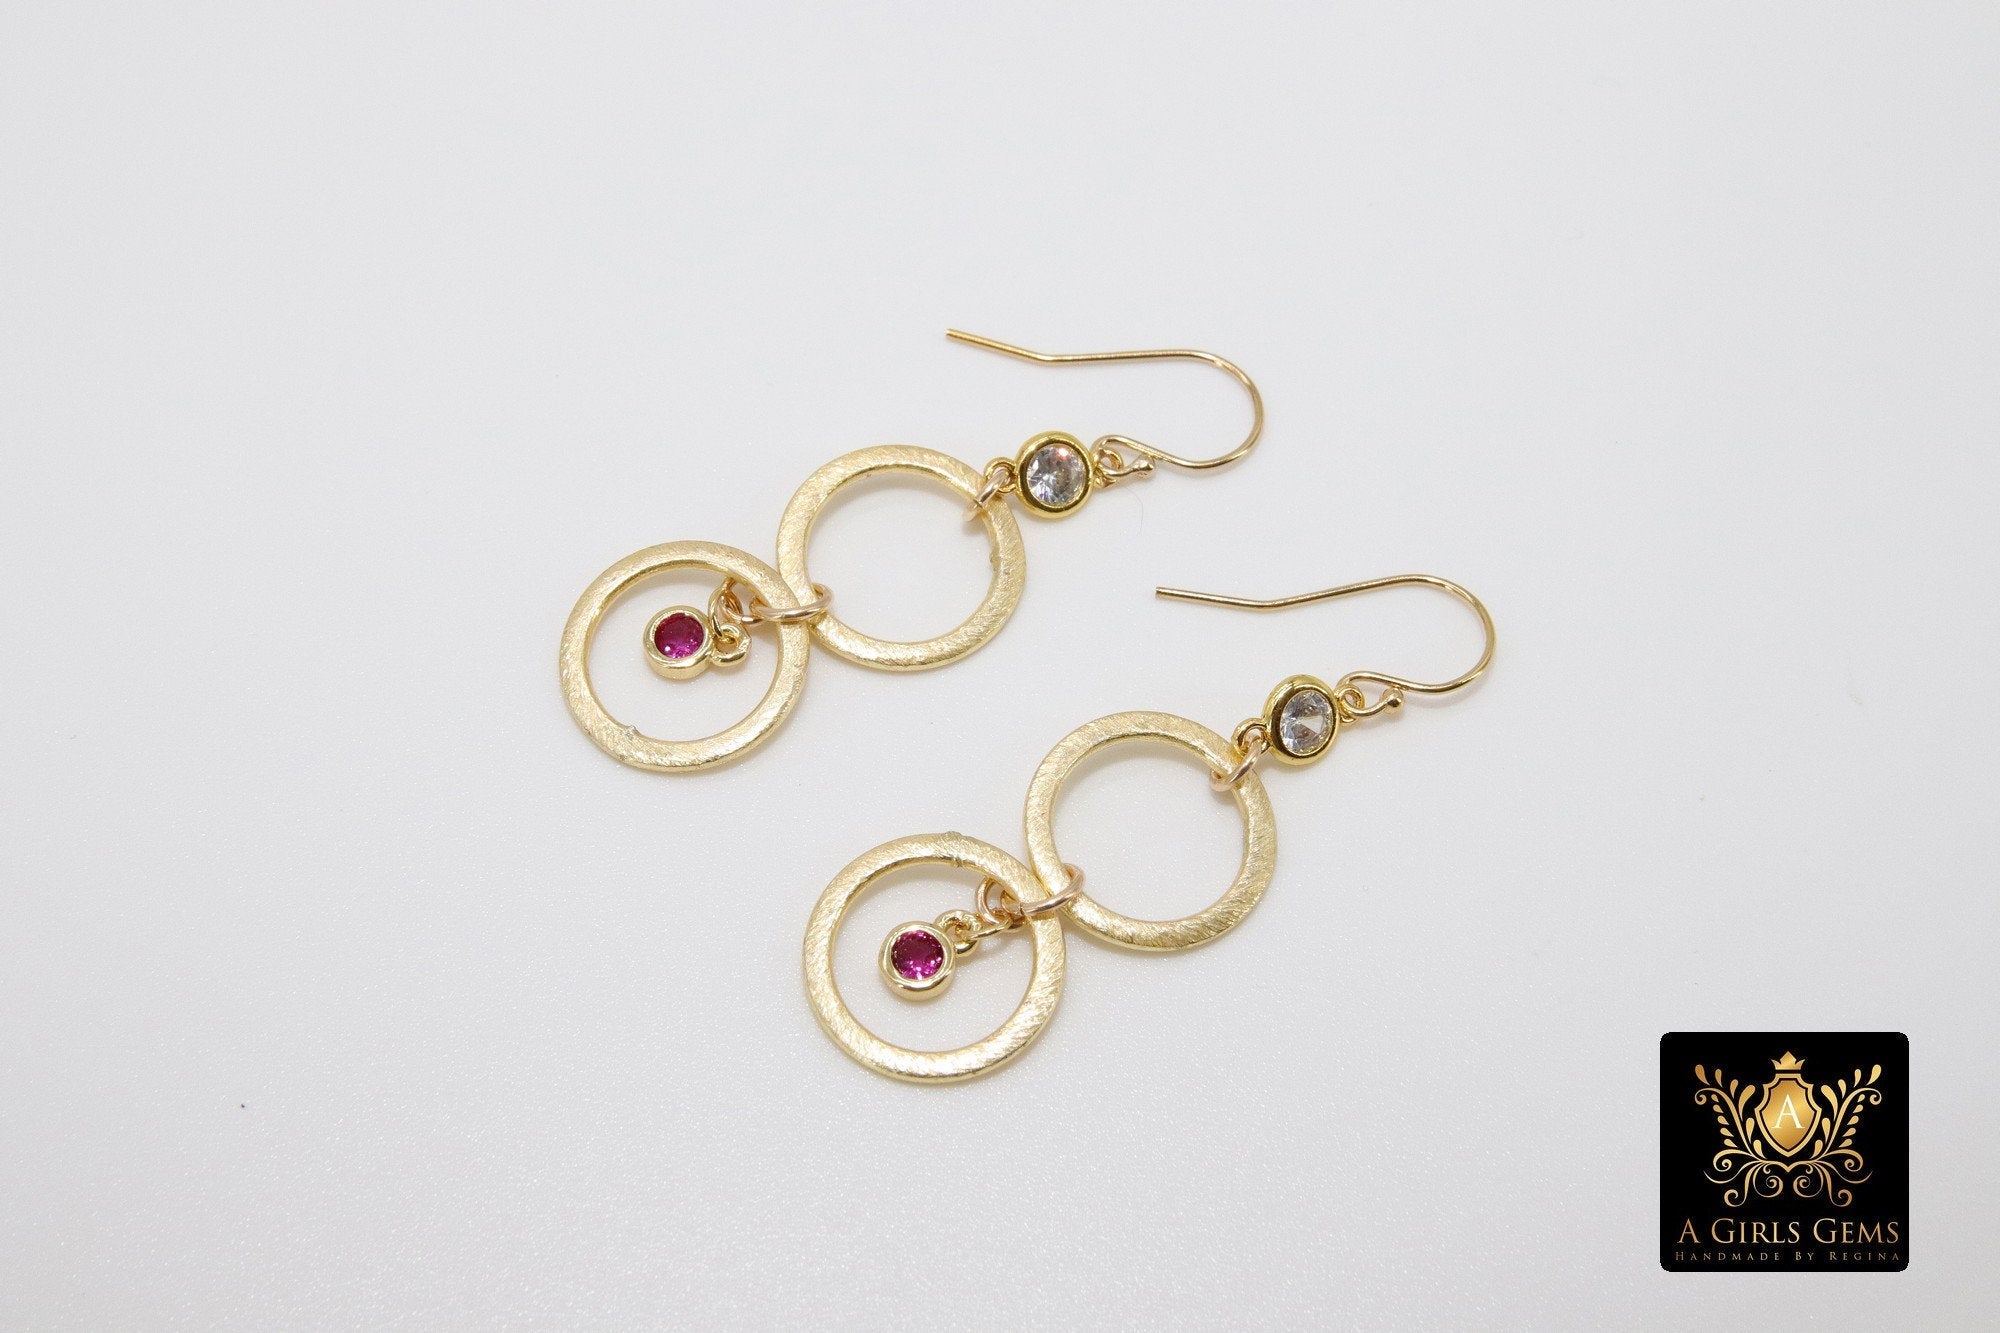 14 K Gold Blue Turquoise Earrings, Black Onyx Gemstones, Dangle Ear Wire Hooks - A Girls Gems